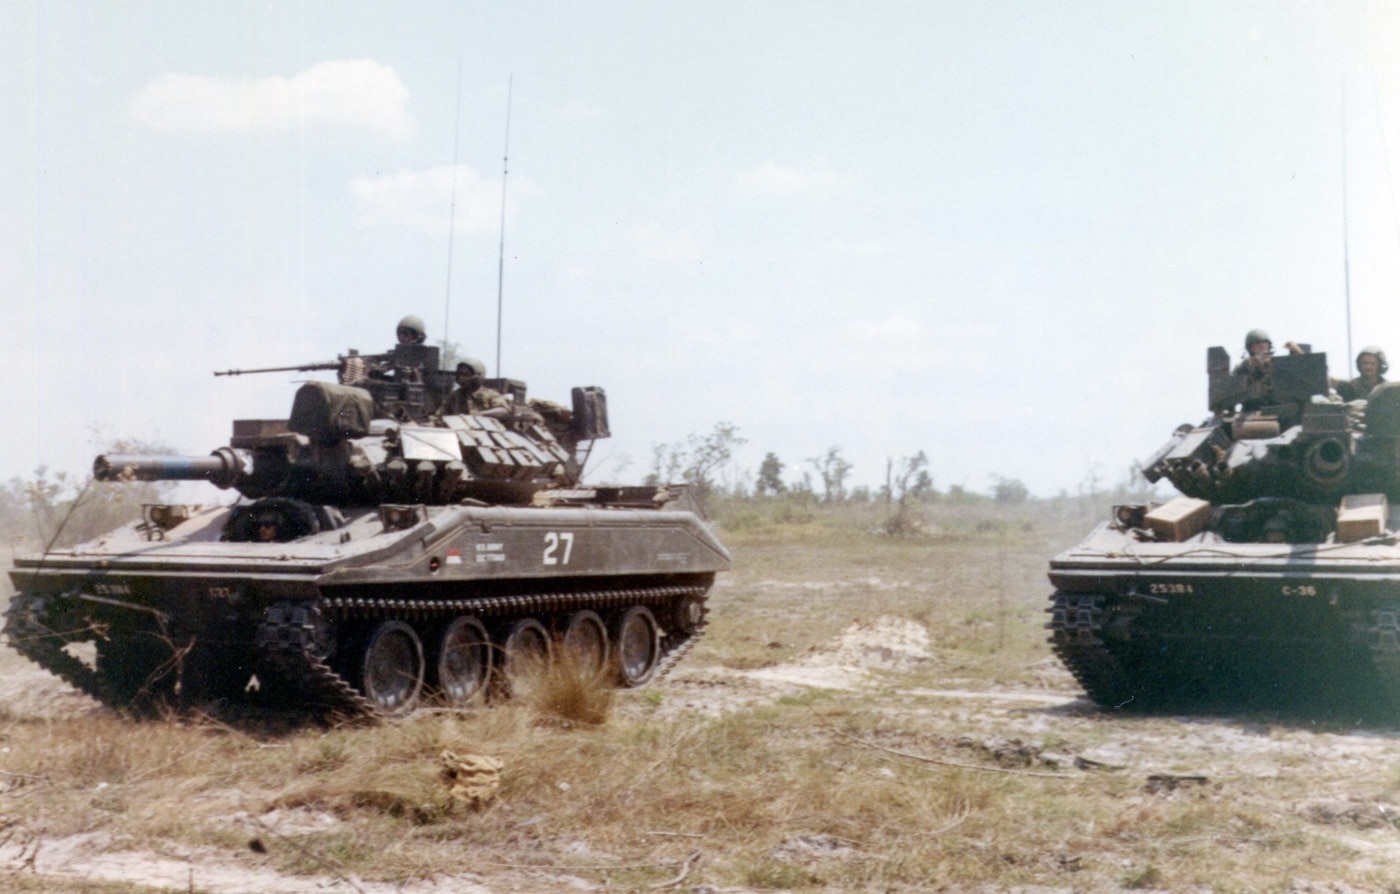 m551 sheridans in combat near cu chi vietnam